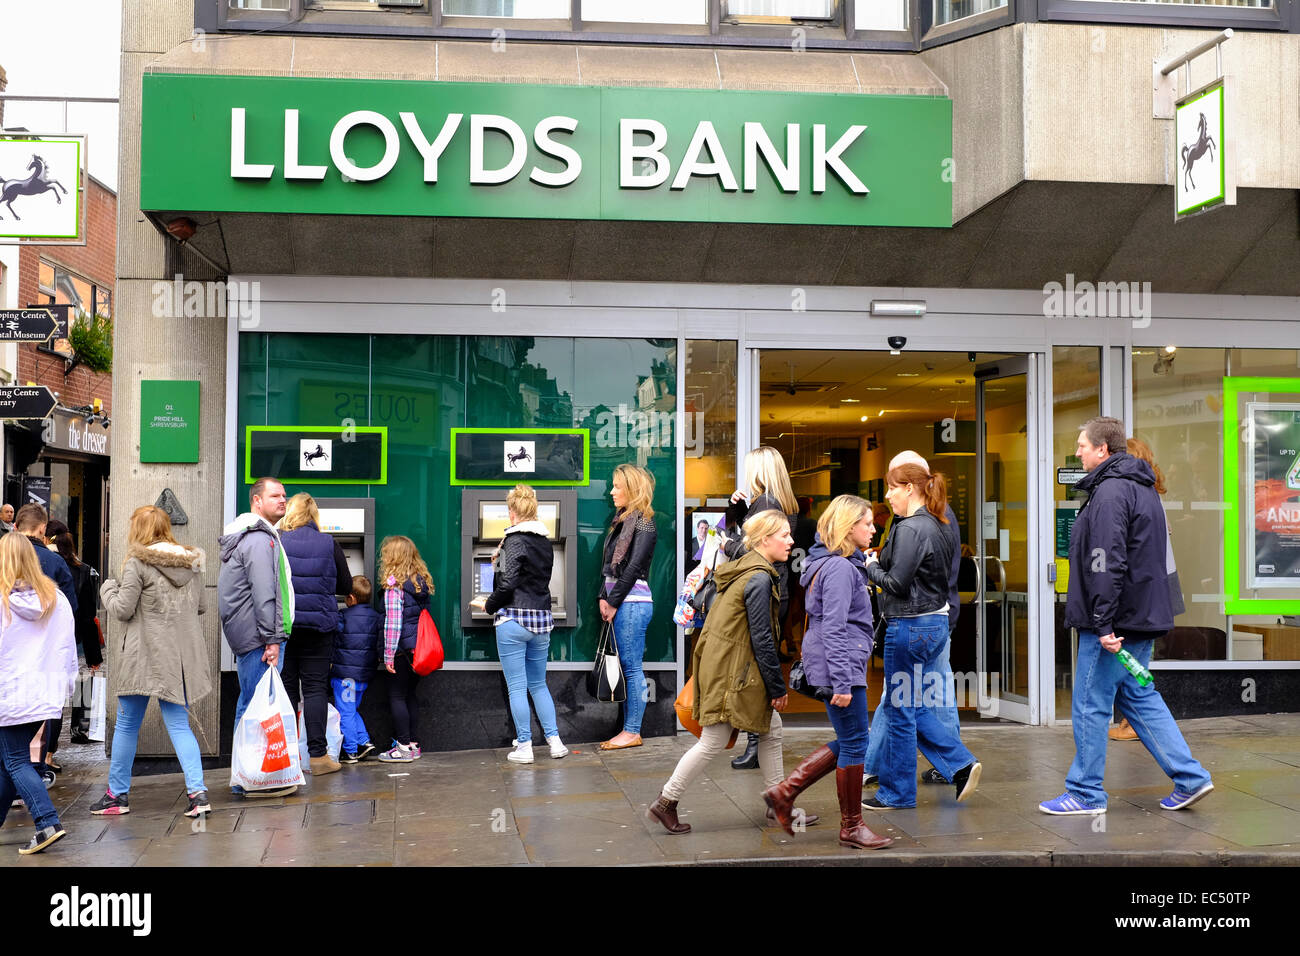 Les gens à l'aide de billets, et en passant devant la Banque Lloyds, Shrewsbury, Shropshire, Angleterre. Banque D'Images